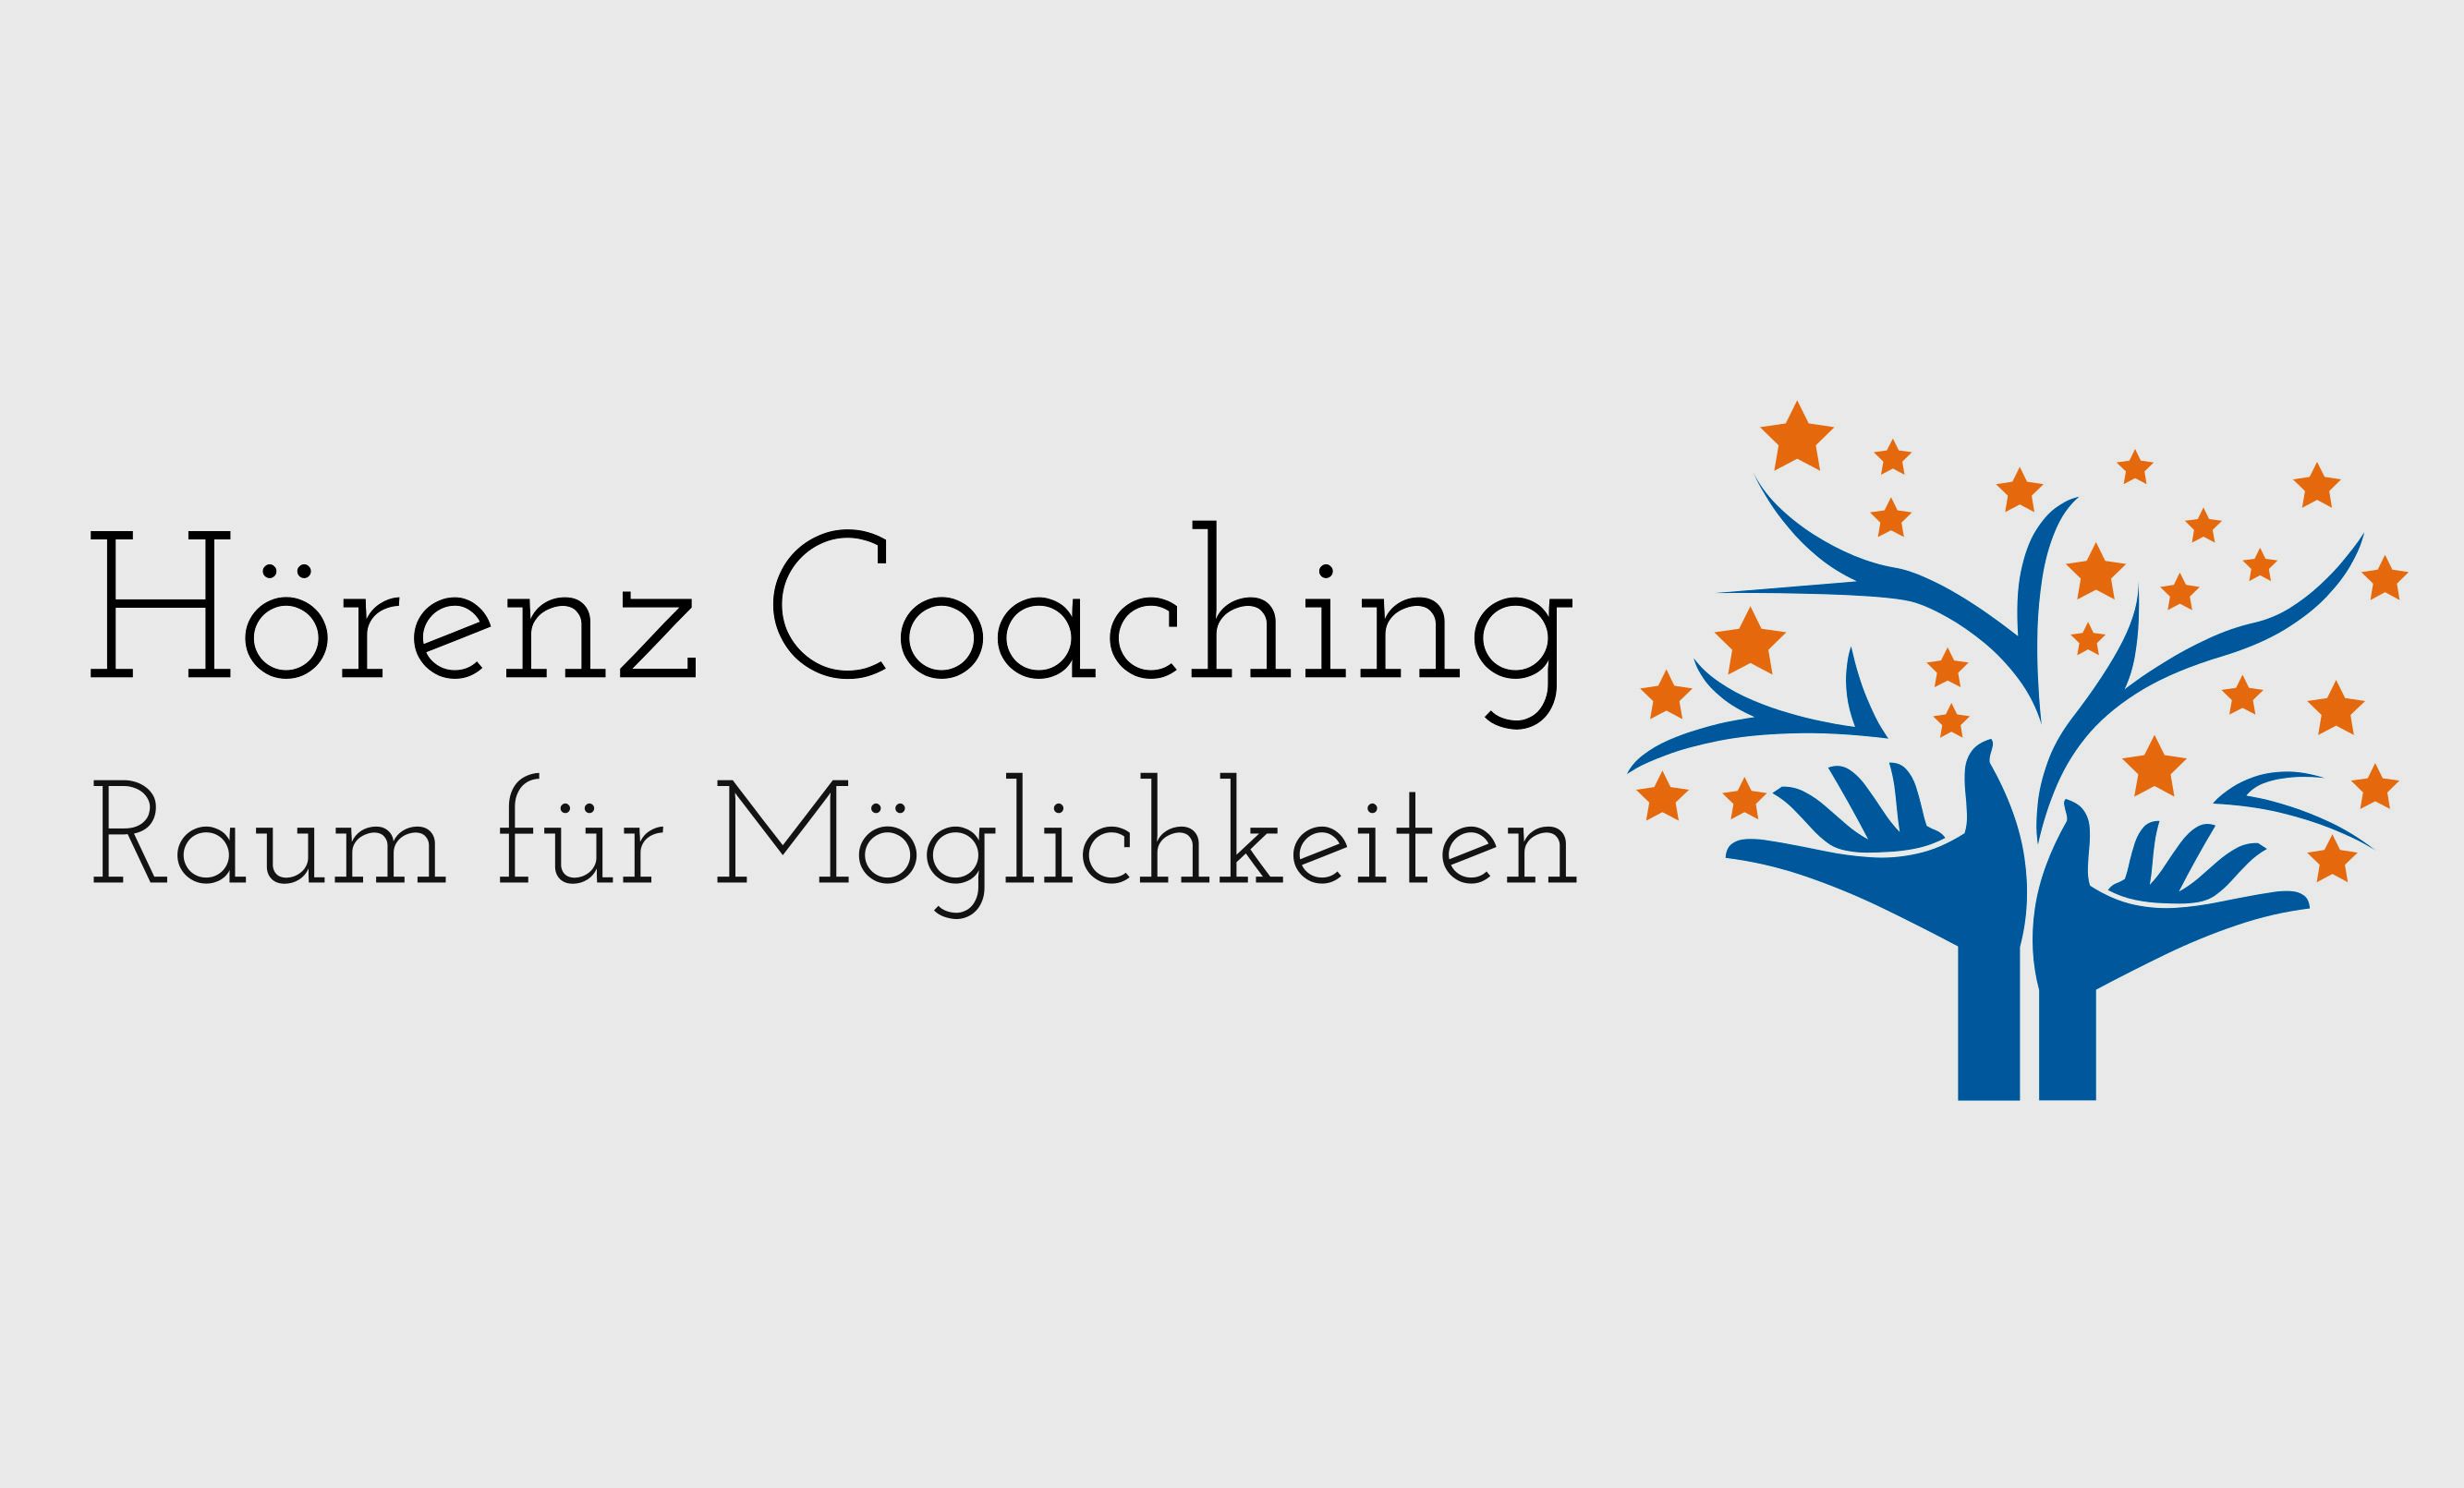 Hörenz Coaching